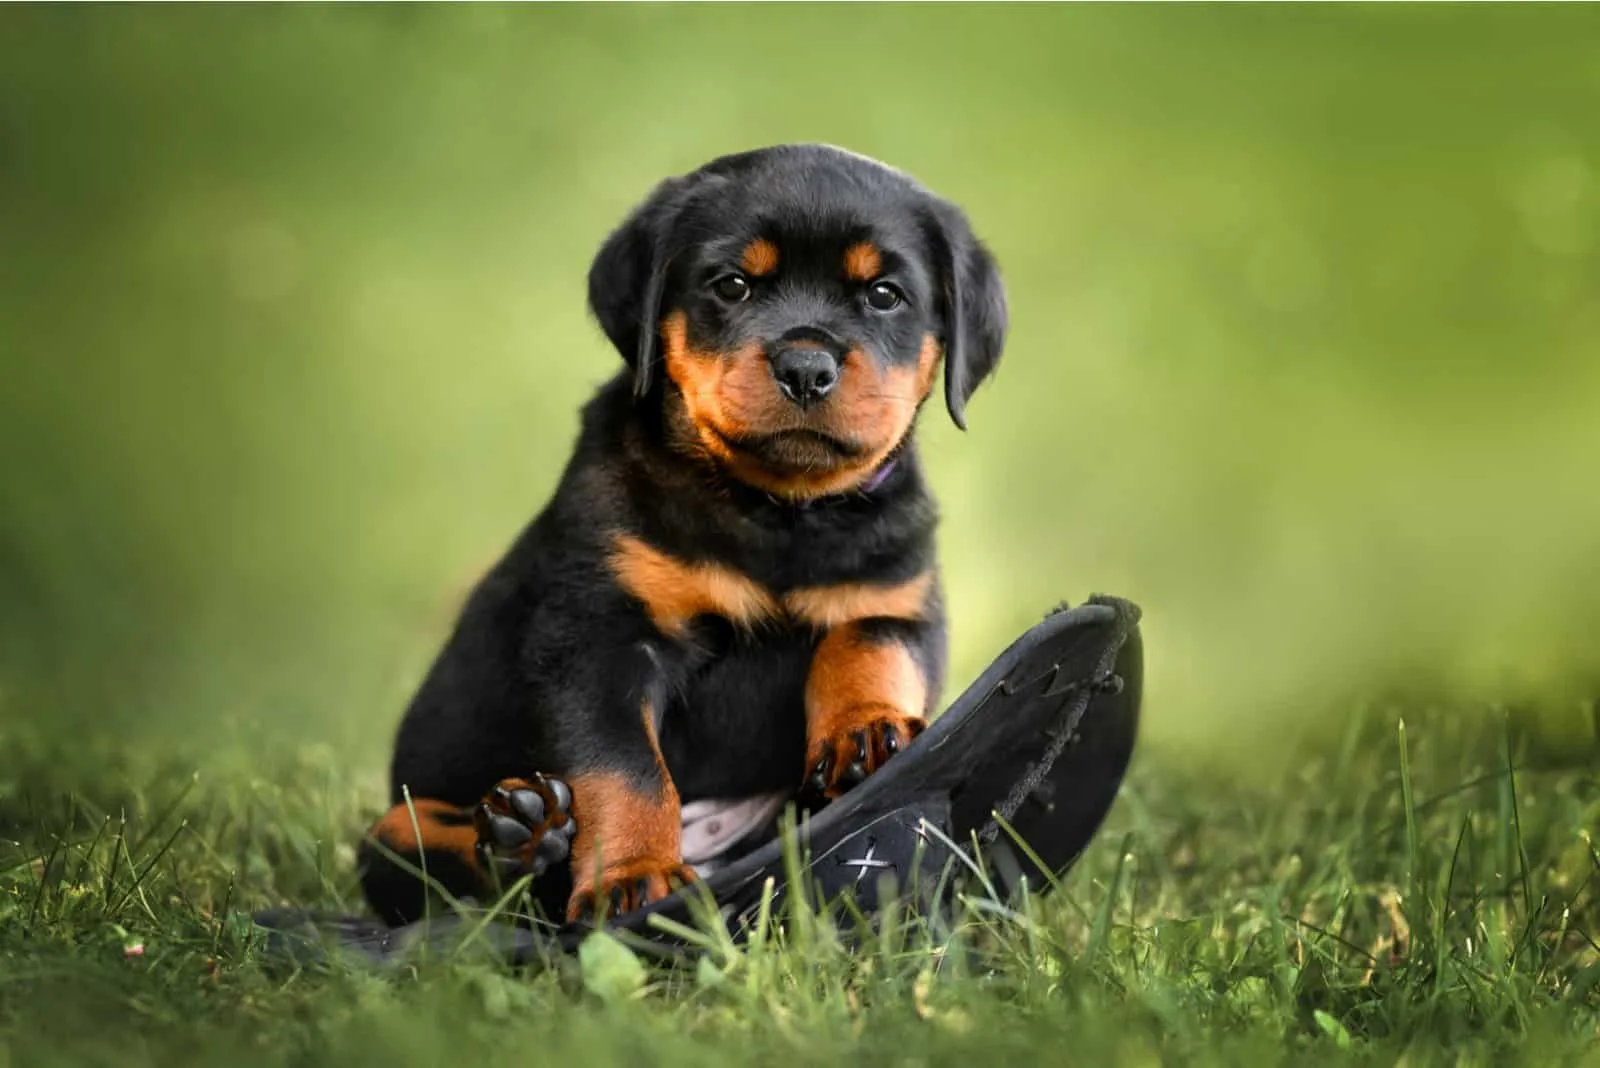 Rottweiler puppy standing on grass